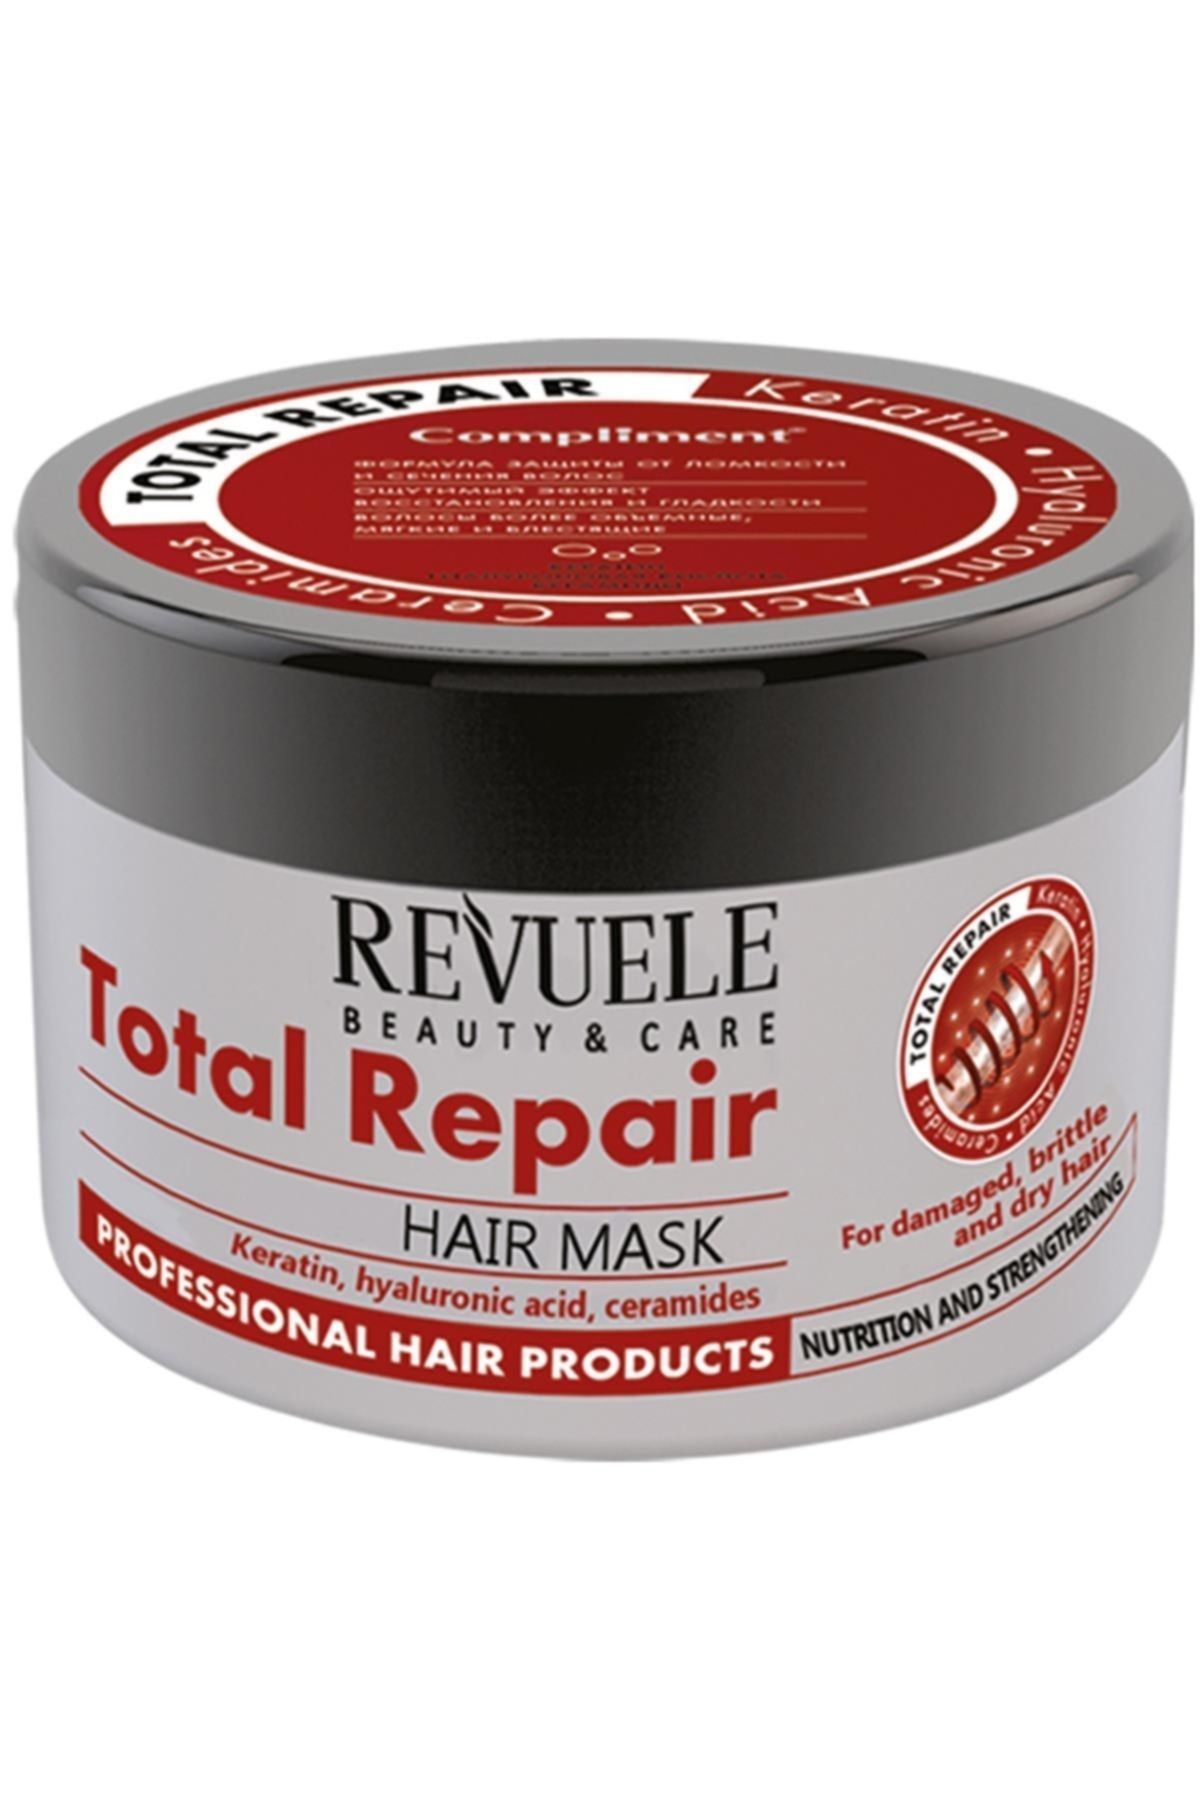 Total repair маска. Маска compliment total Repair. Compliment маска для волос. Маска для волос total Repair. Маска для волос комплимент total Repair с кератином.